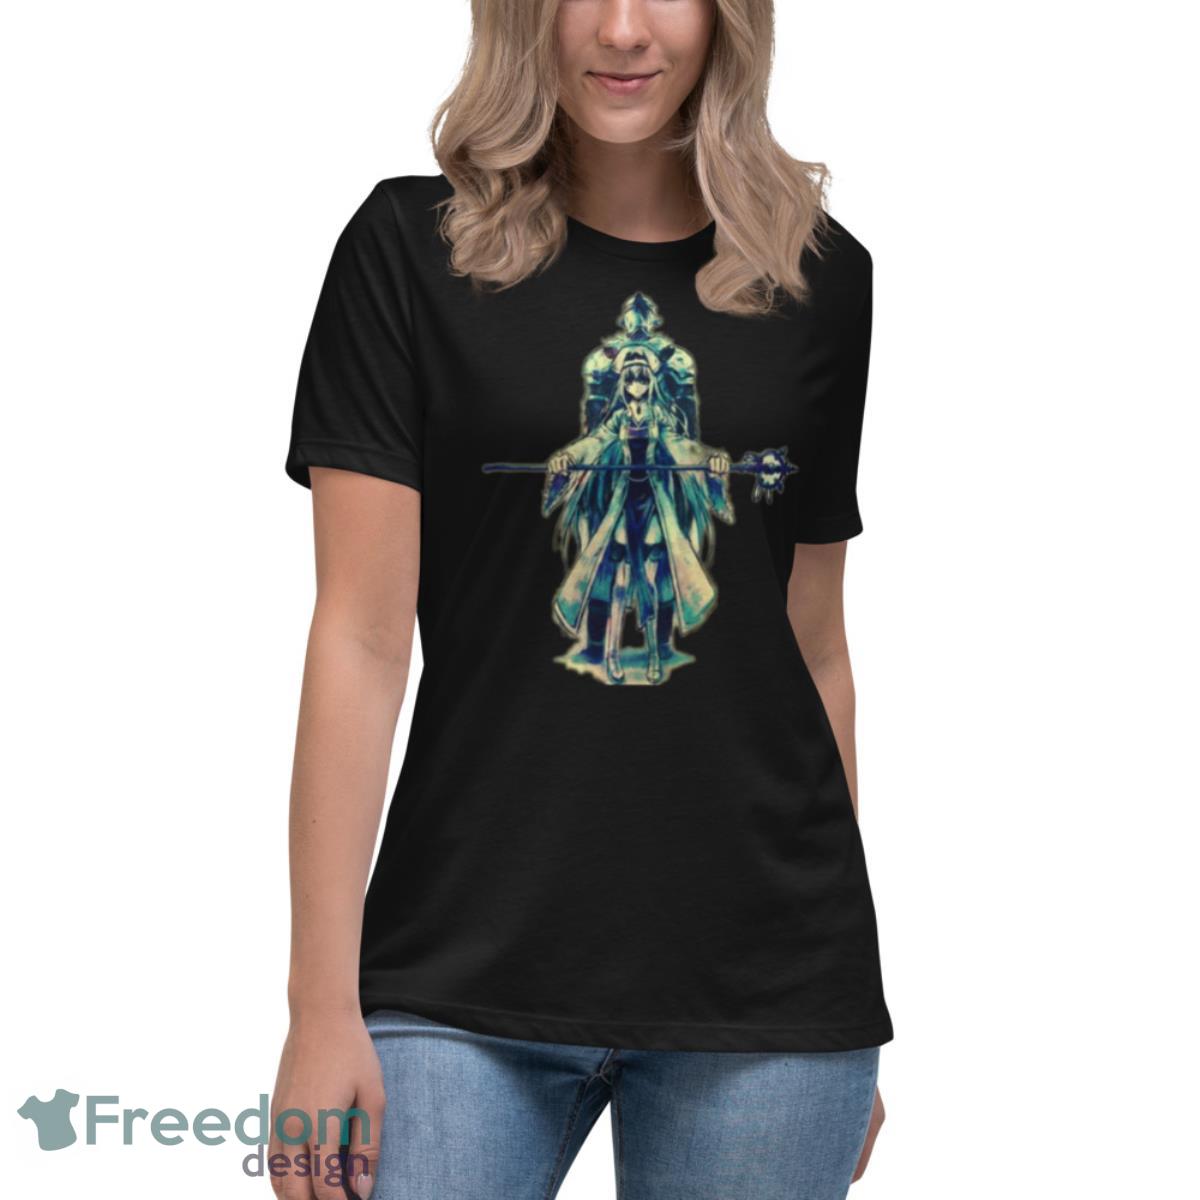 The Light Novel Goblin Slayer End Priestess shirt